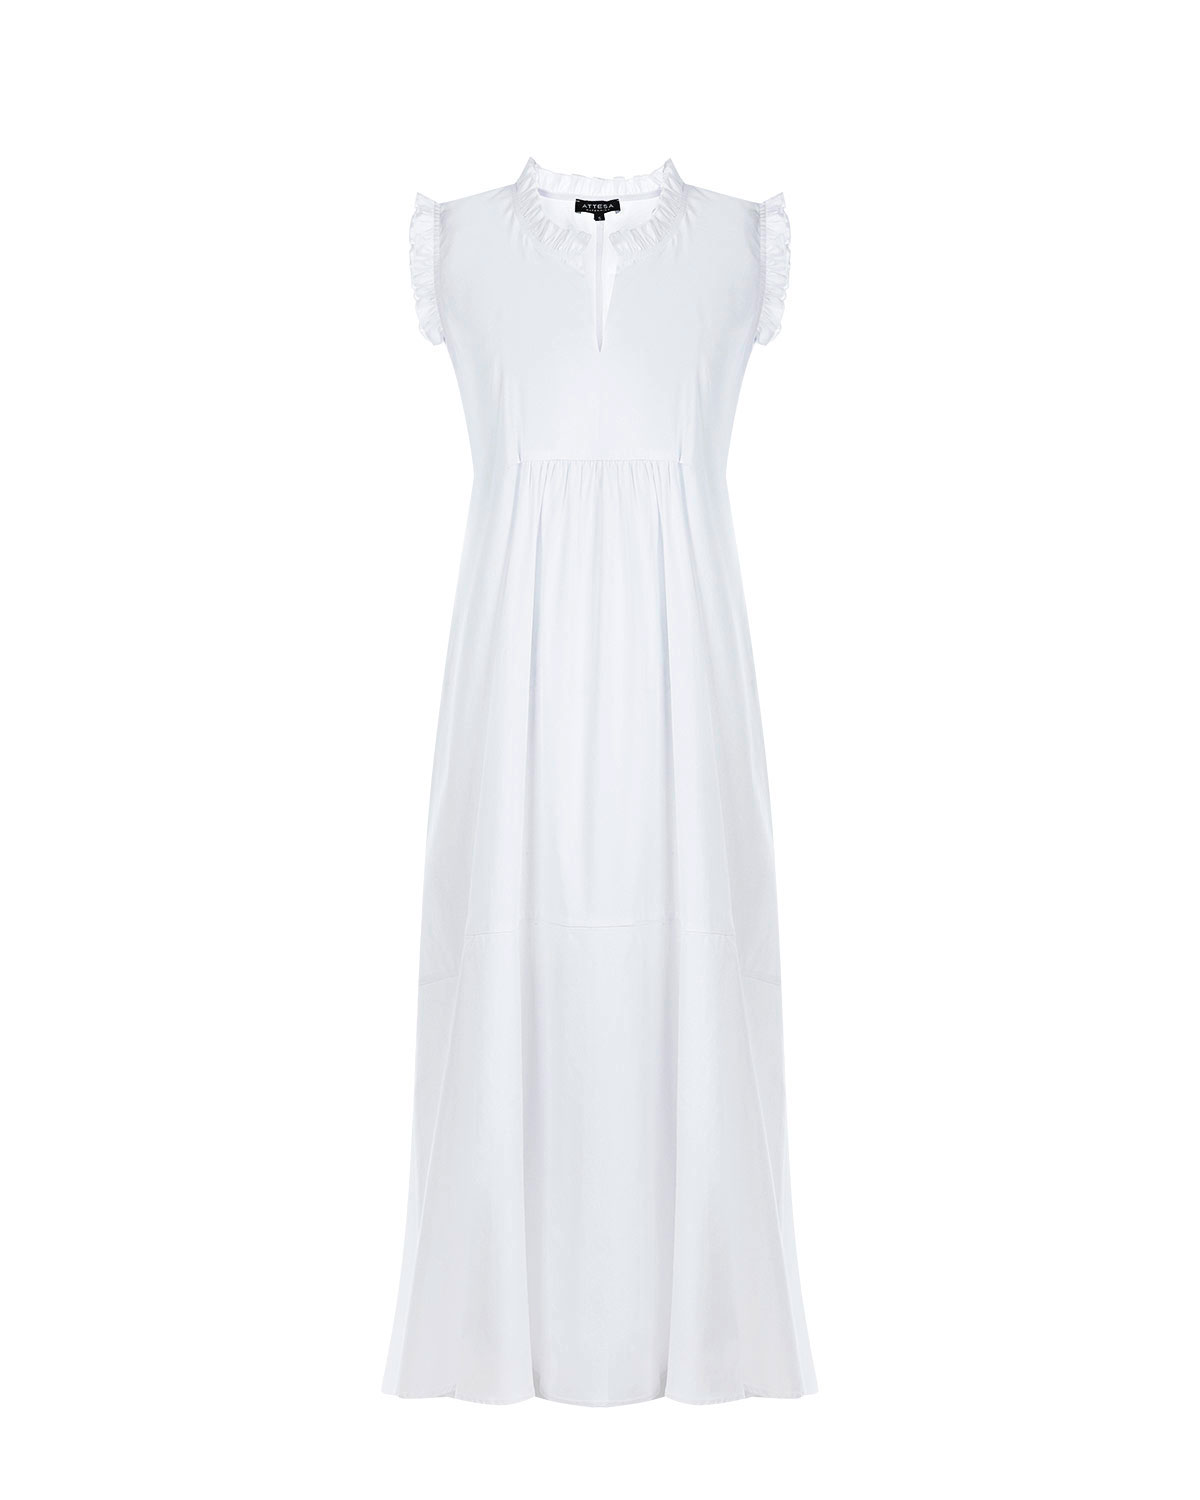 Белое платье с отделкой рюшами Attesa белого цвета